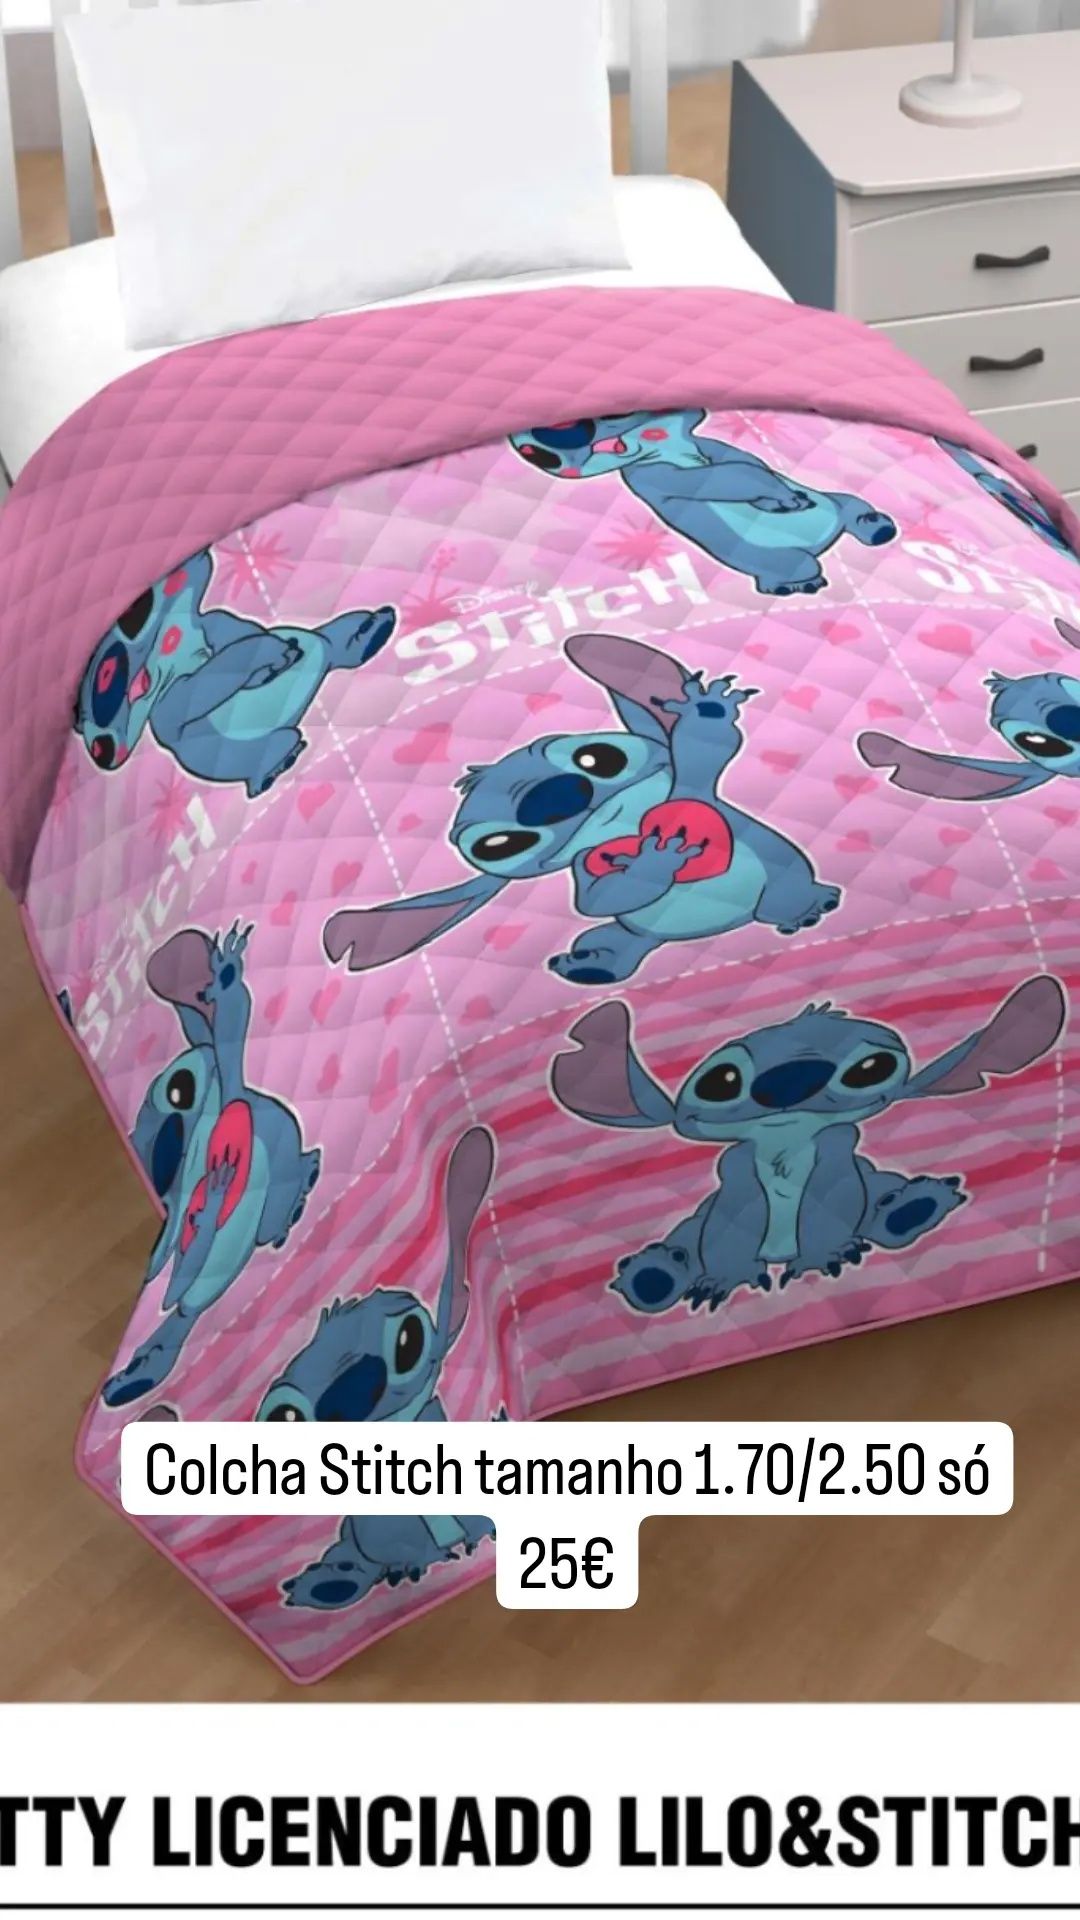 Colchas do stitch